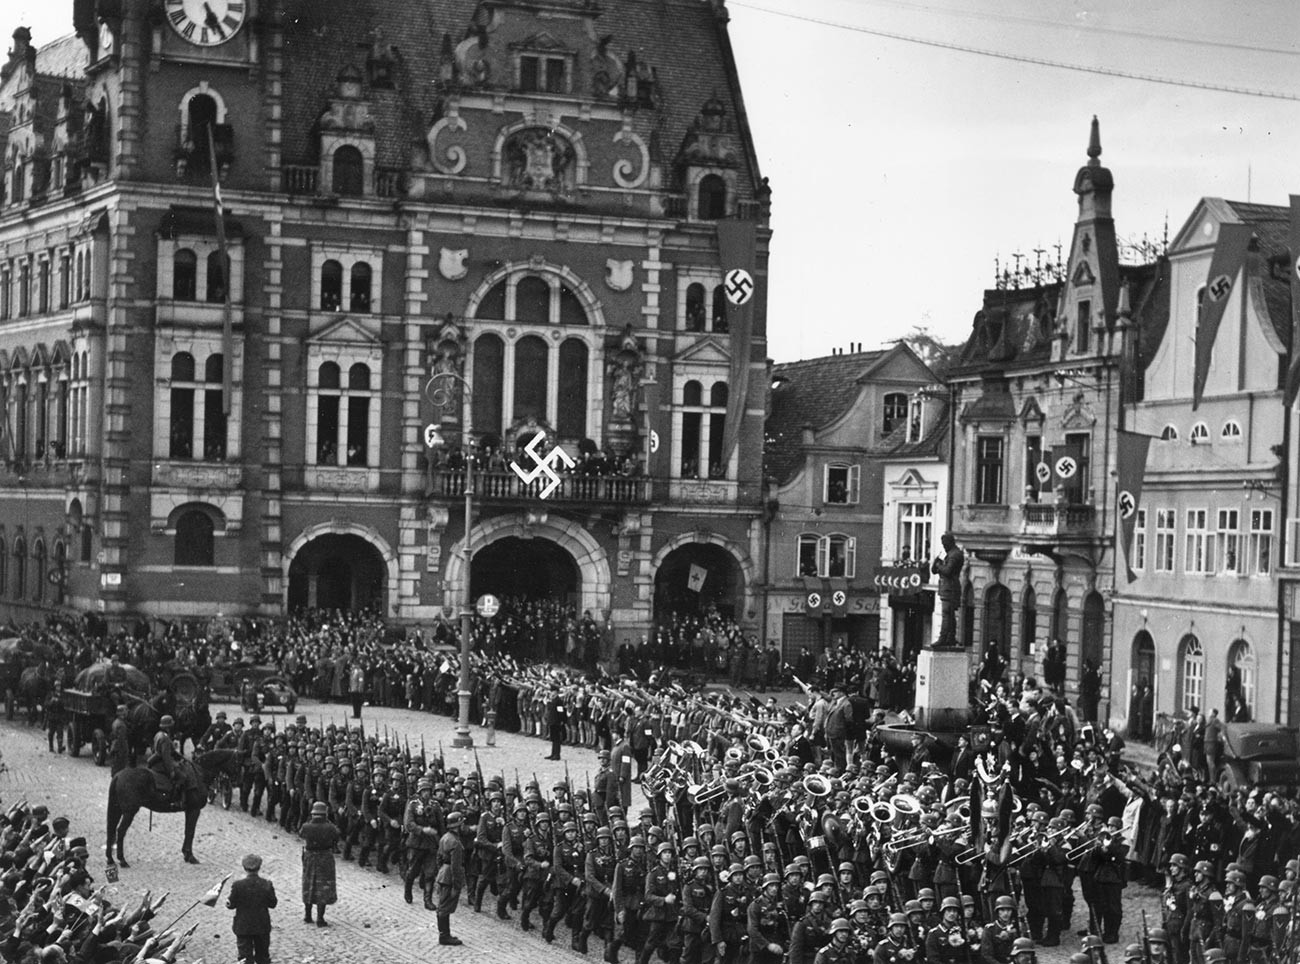 Truppen der deutschen Armee marschieren in das tschechoslowakische Gebiet ein und stellen sich auf dem mit Hakenkreuzbannern geschmückten Stadtplatz in Rumburk zum Appell auf.